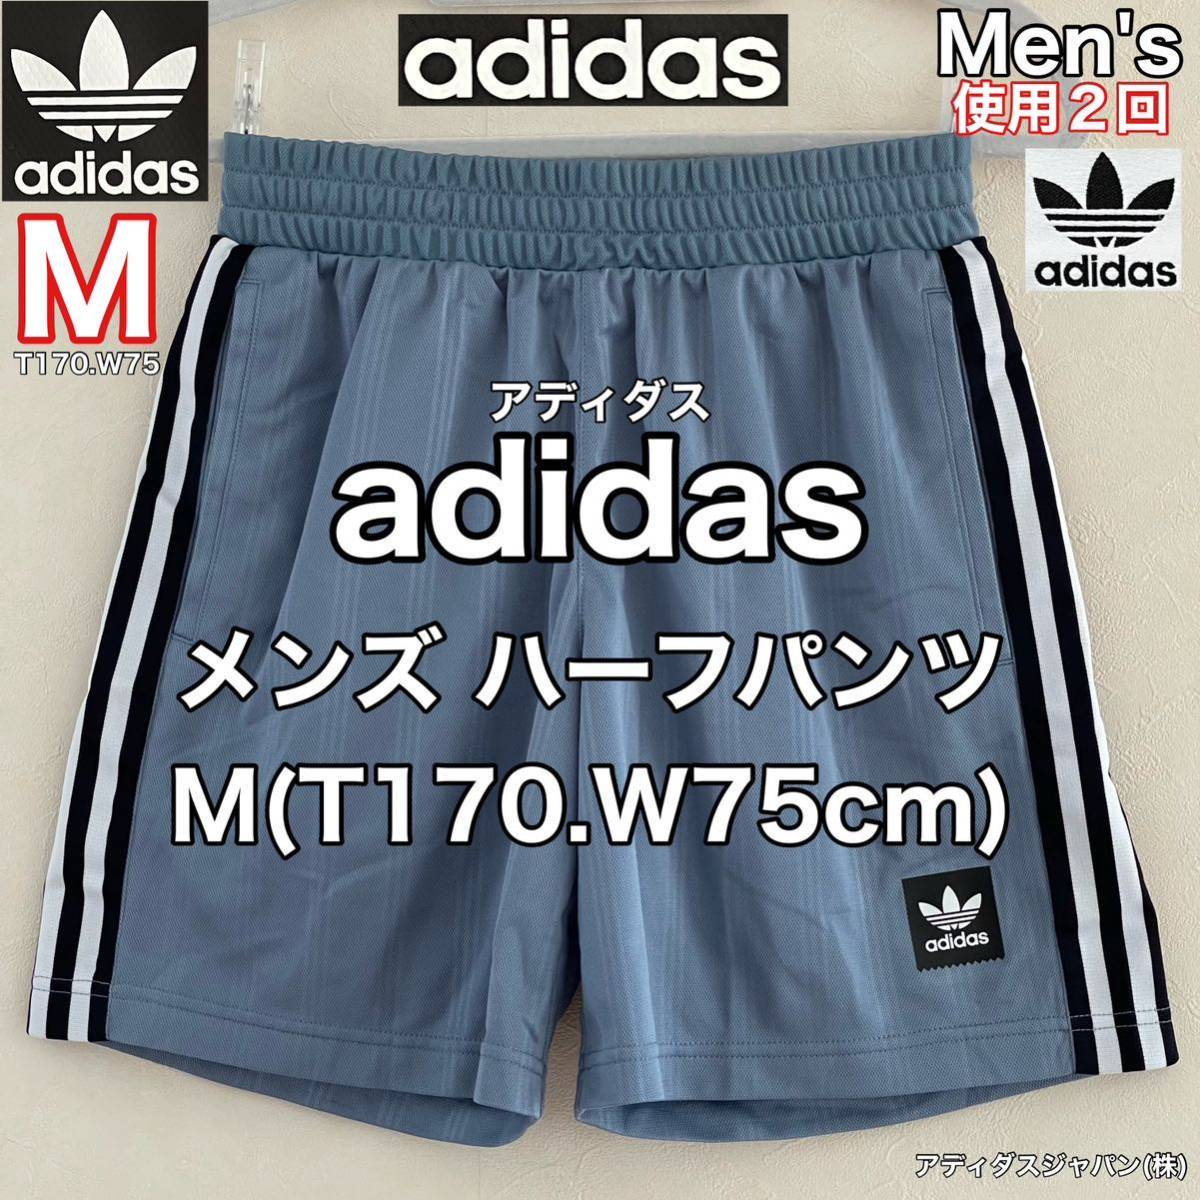 超美品 adidas(アディダス)メンズ ハーフ パンツ M(T170.W75cm)ブルー 使用2回 インナーメッシュ ゴルフ サッカー スポーツ ズボン